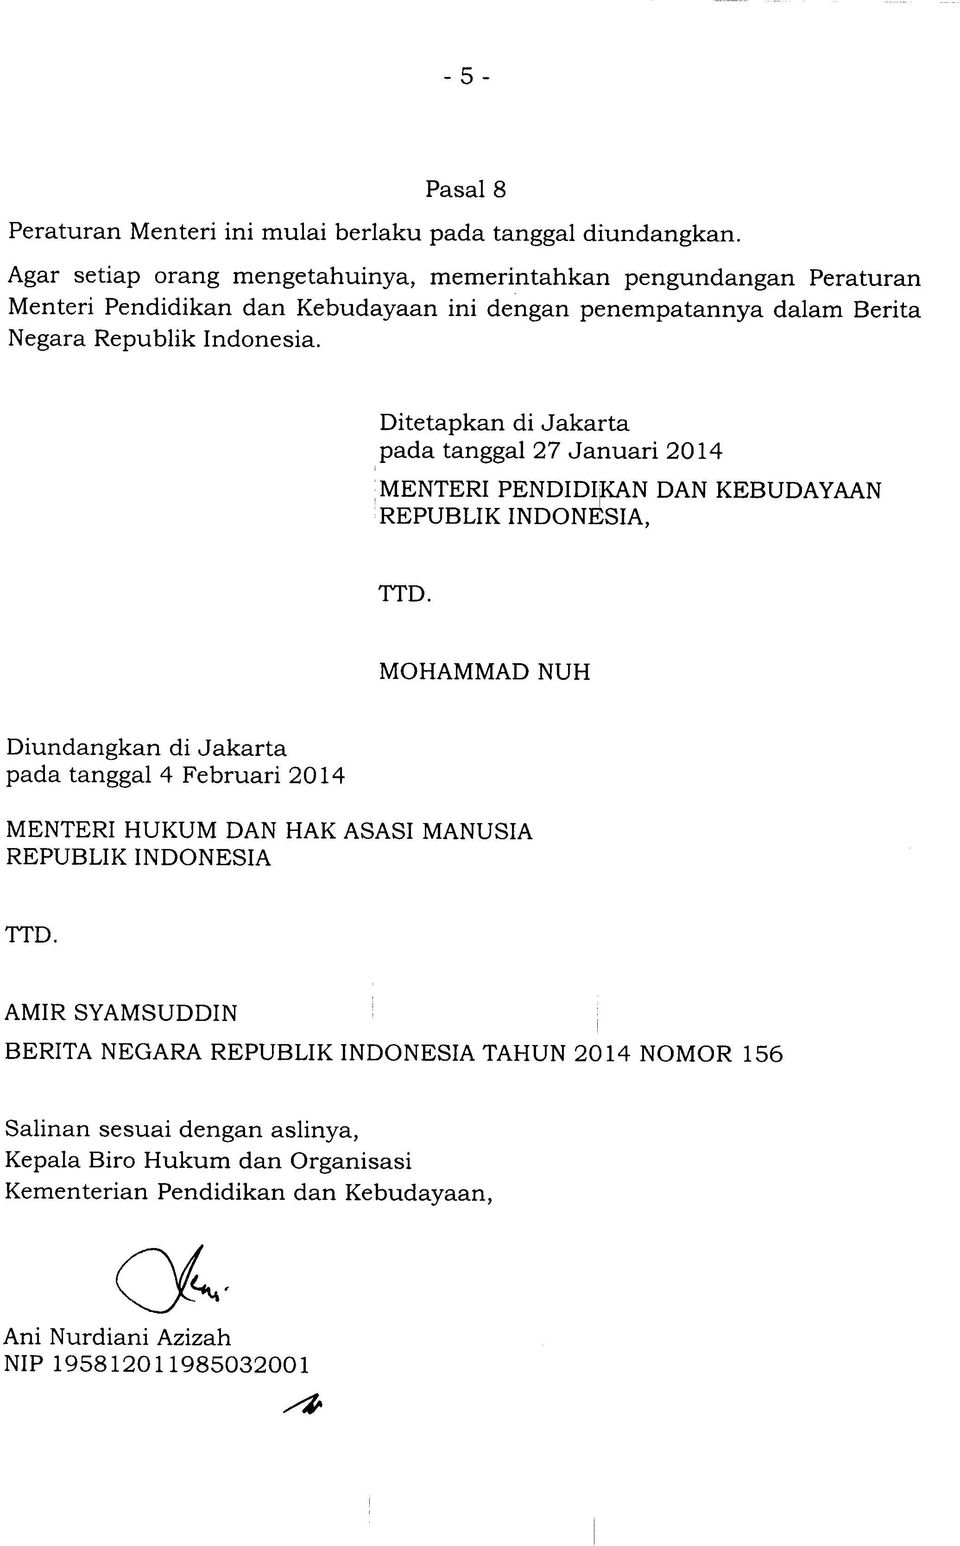 Ditetapkan di Jakarta pada tanggal 27 Januari 2014 MENTERI PENDIDI^N DAN REPUBLIK INDONESIA, KEBUDAYAAN TTD.